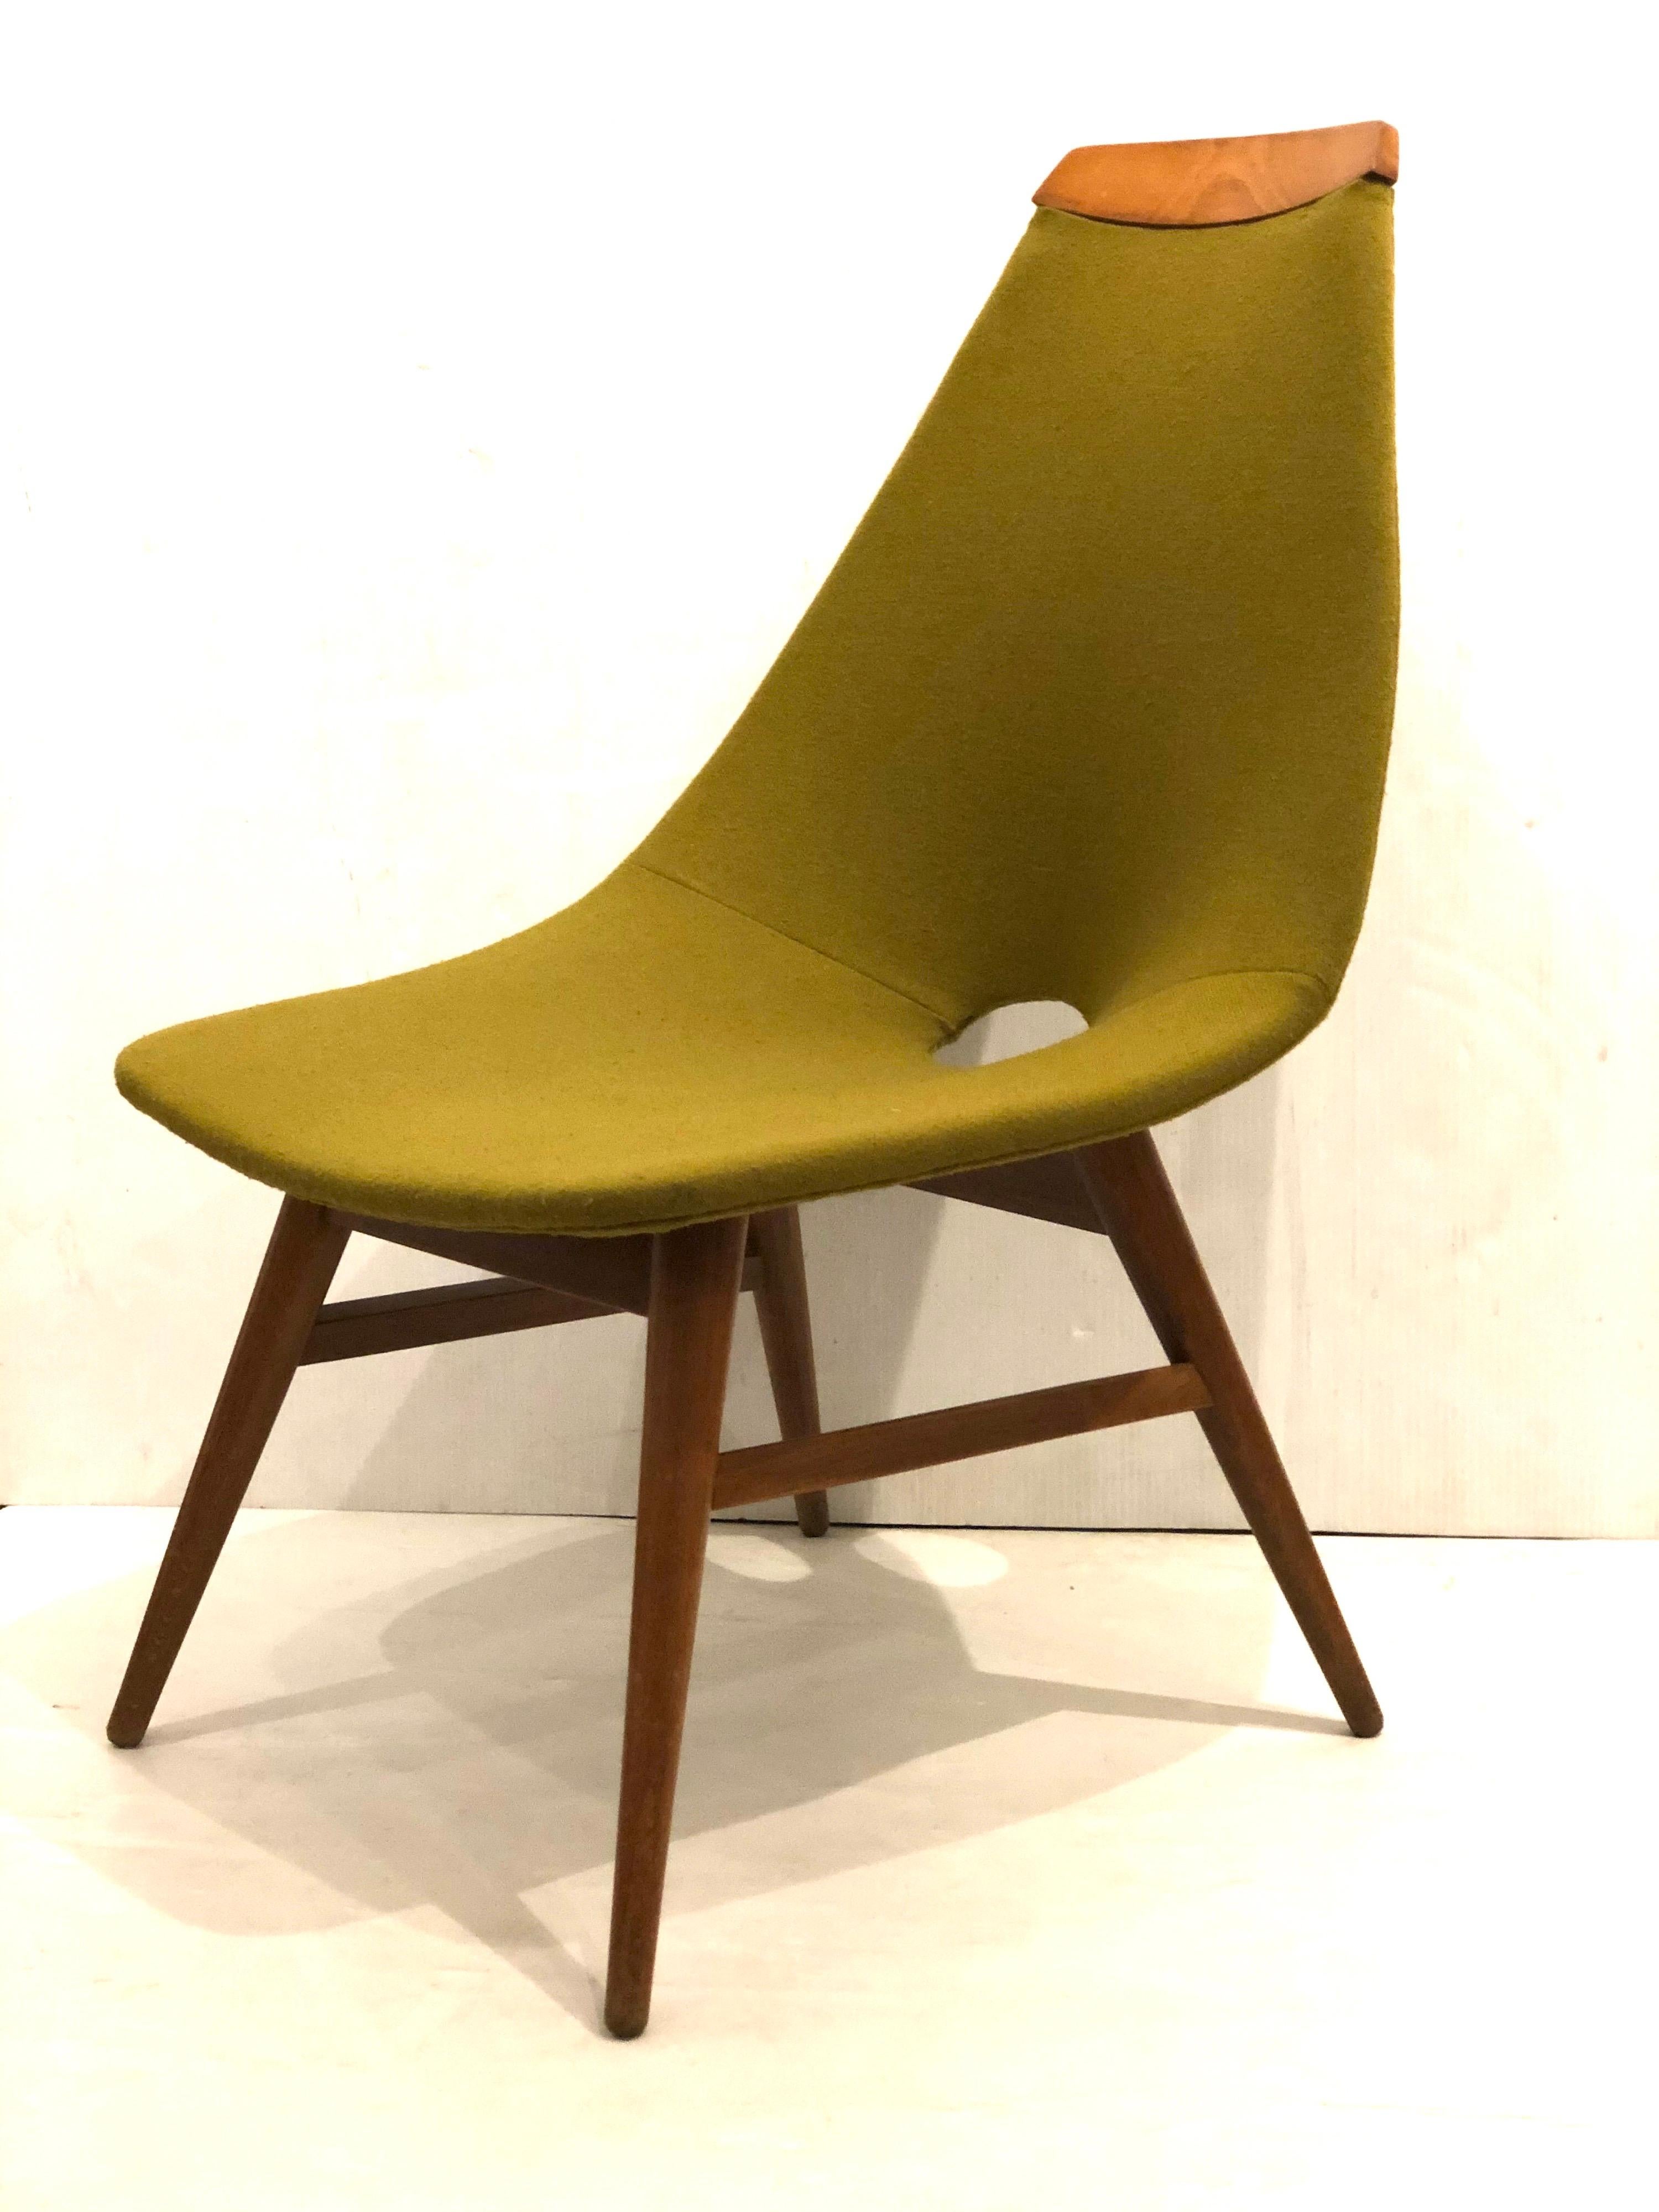 Die aus Ungarn stammende Innenarchitektin Judit Burian wurde vom skandinavischen Design der 1950er Jahre inspiriert. 1959 entwarf sie die Erika-Stühle. Ein sehr elegantes und komfortables Petit-Modell. Der Rahmen aus Eschenholz und der ursprüngliche